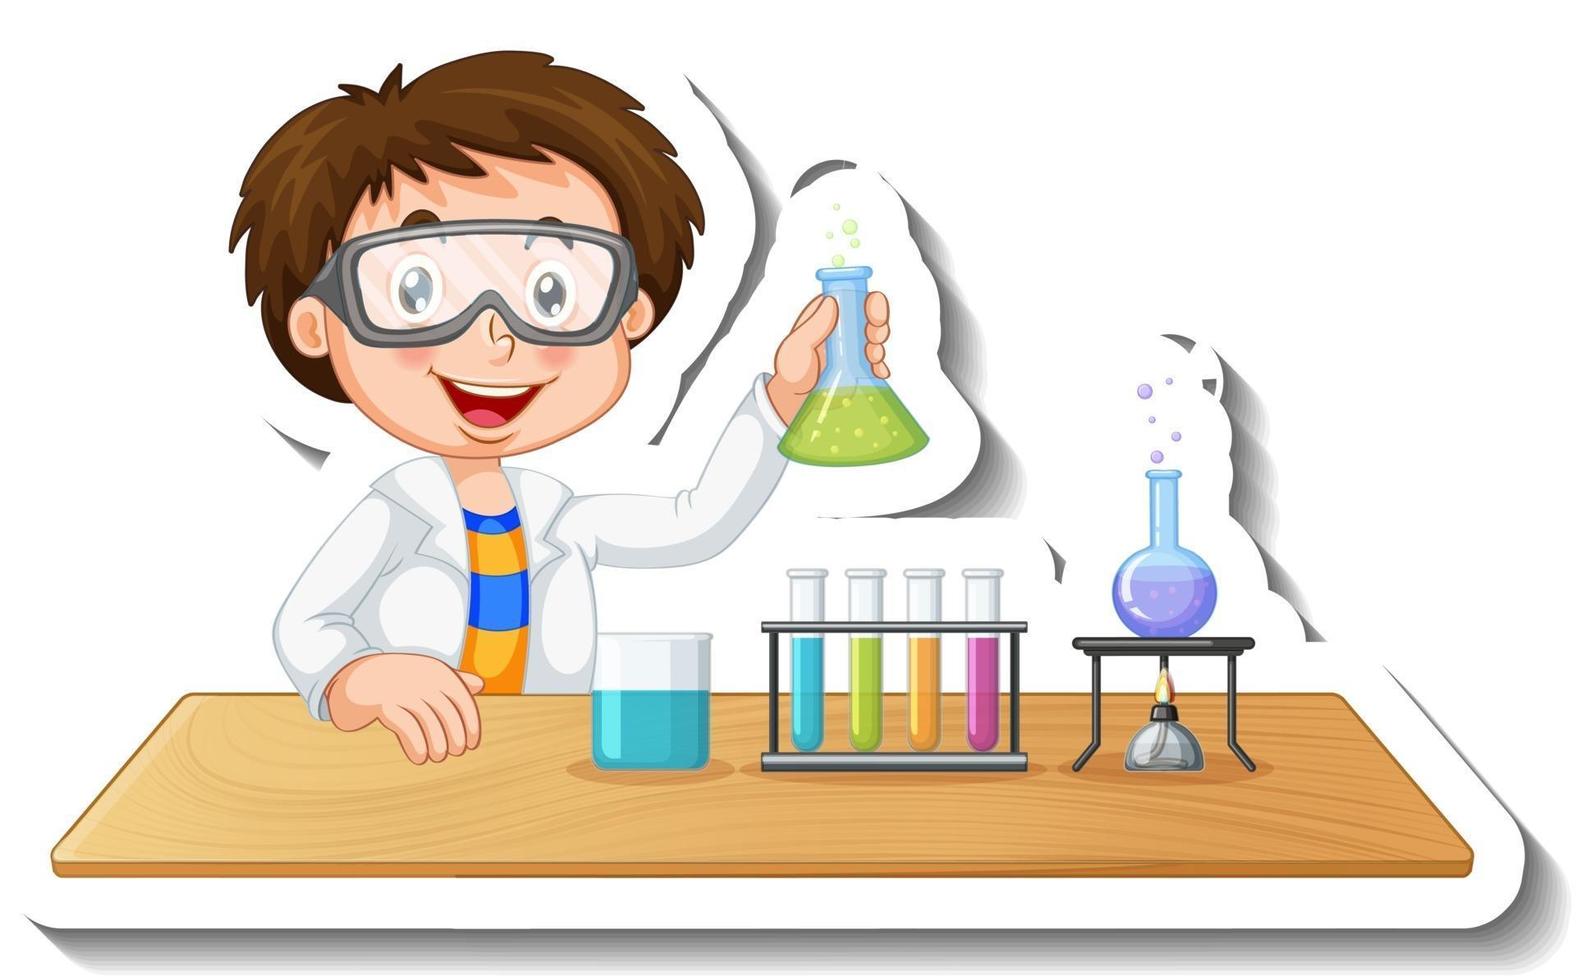 Plantilla de pegatina con personaje de dibujos animados de un estudiante que realiza un experimento químico vector